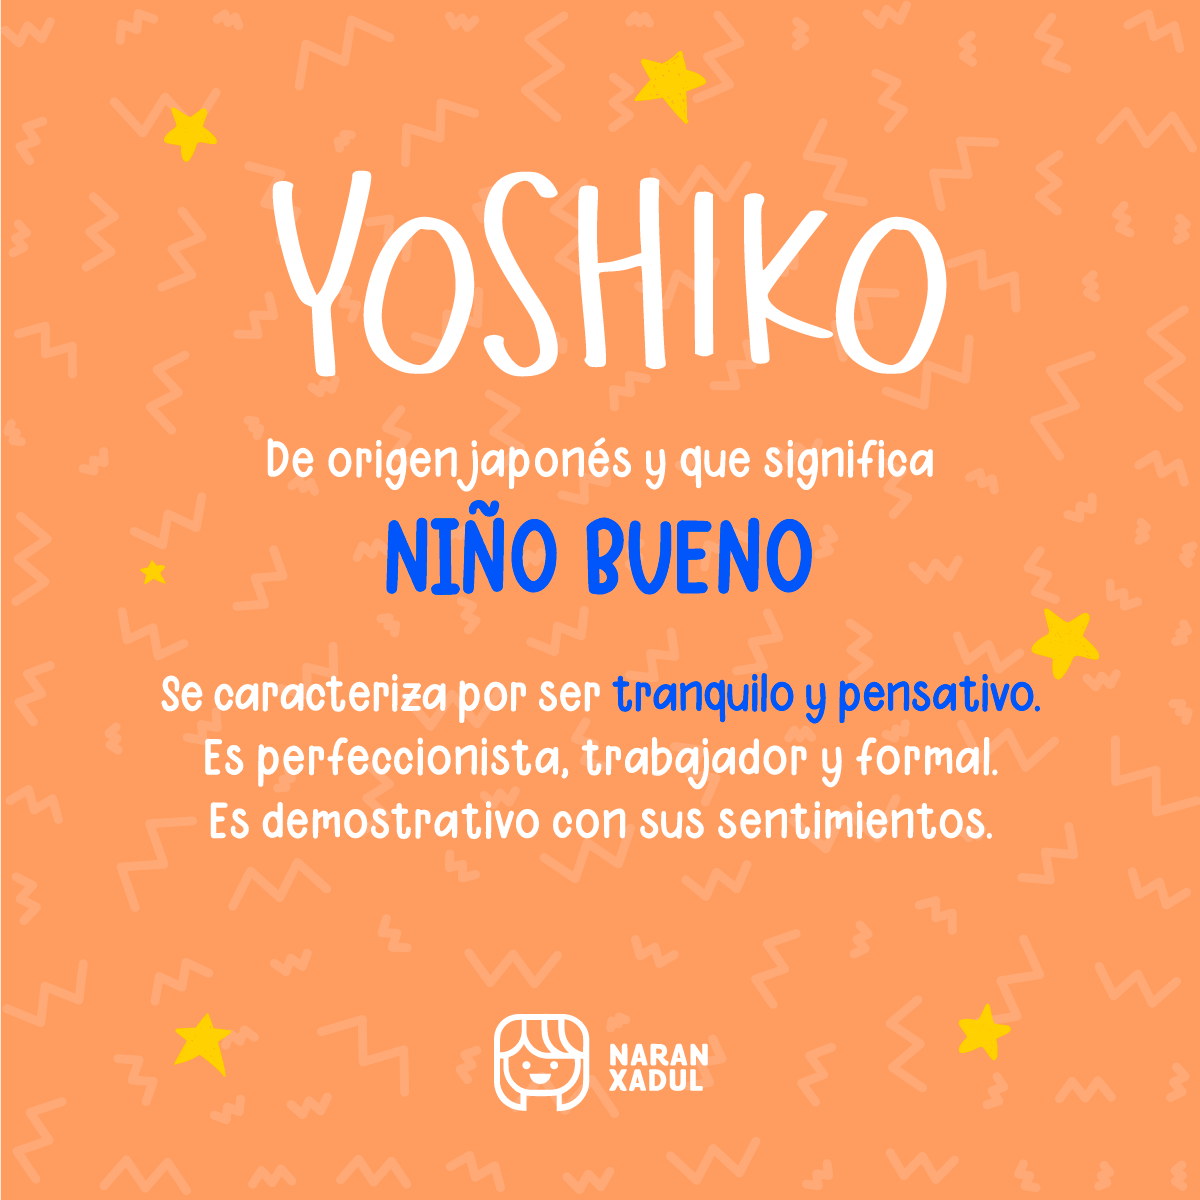 yoshiko, nombres japones, nombres modernos, nombres en otro idioma, significado de nombres